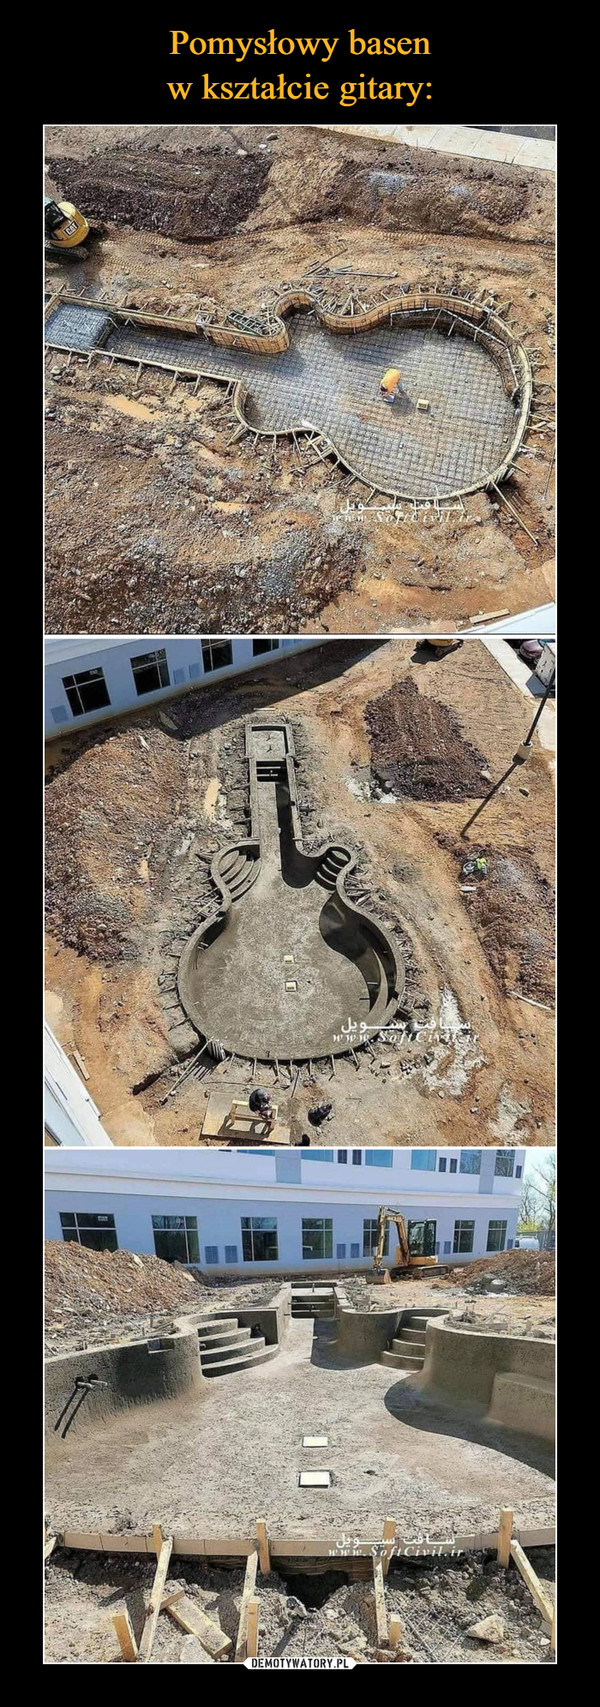 Pomysłowy basen
w kształcie gitary: